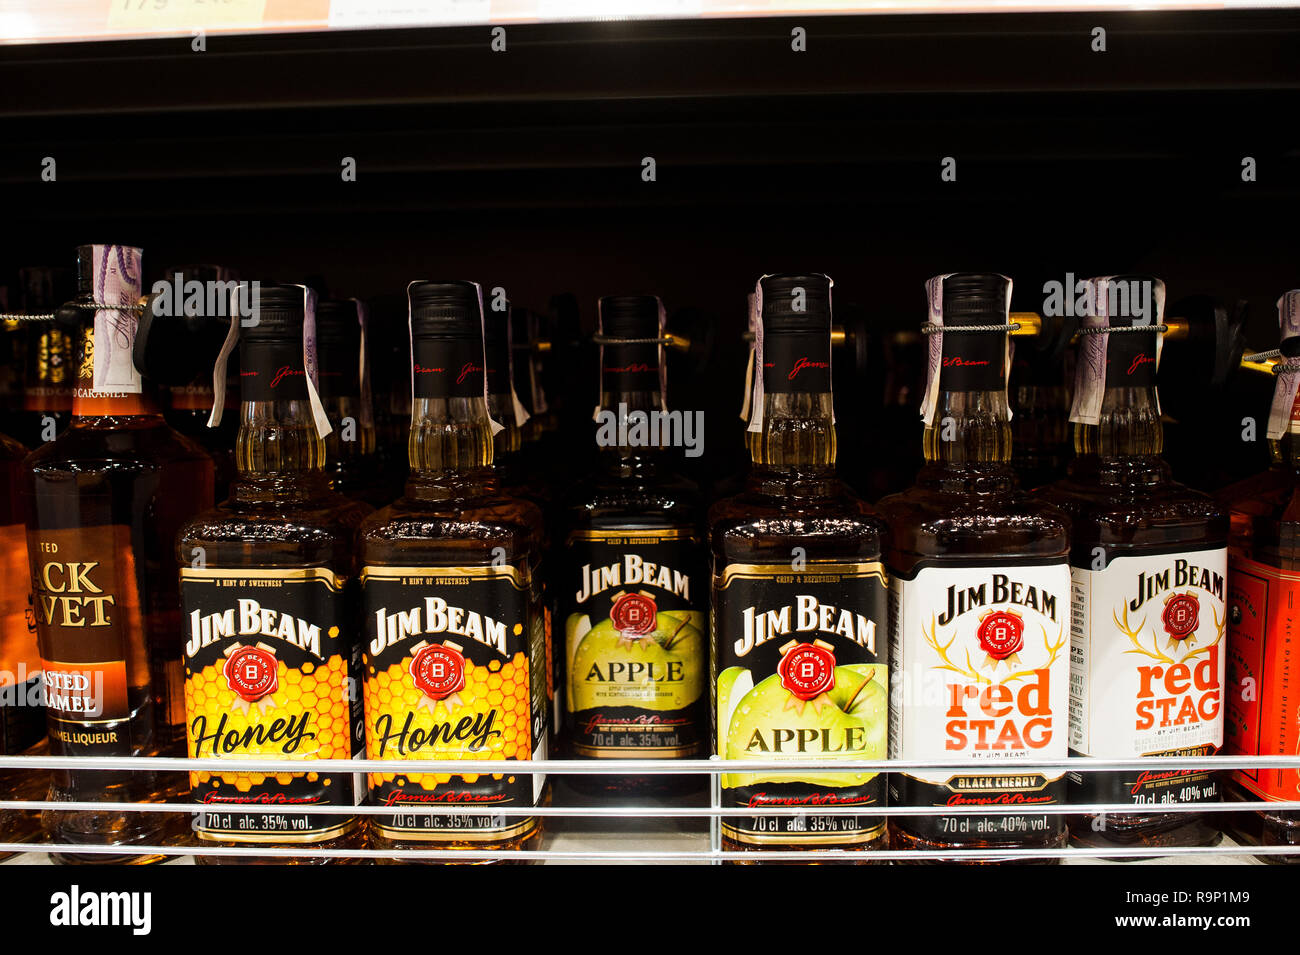 Kiev, Ucraina - 19 dicembre 2018: bottiglie di Jim Beam miele, Apple e al Cervo su scaffali in un supermercato. Jim Beam è una marca di whiskey Bourbon p Foto Stock